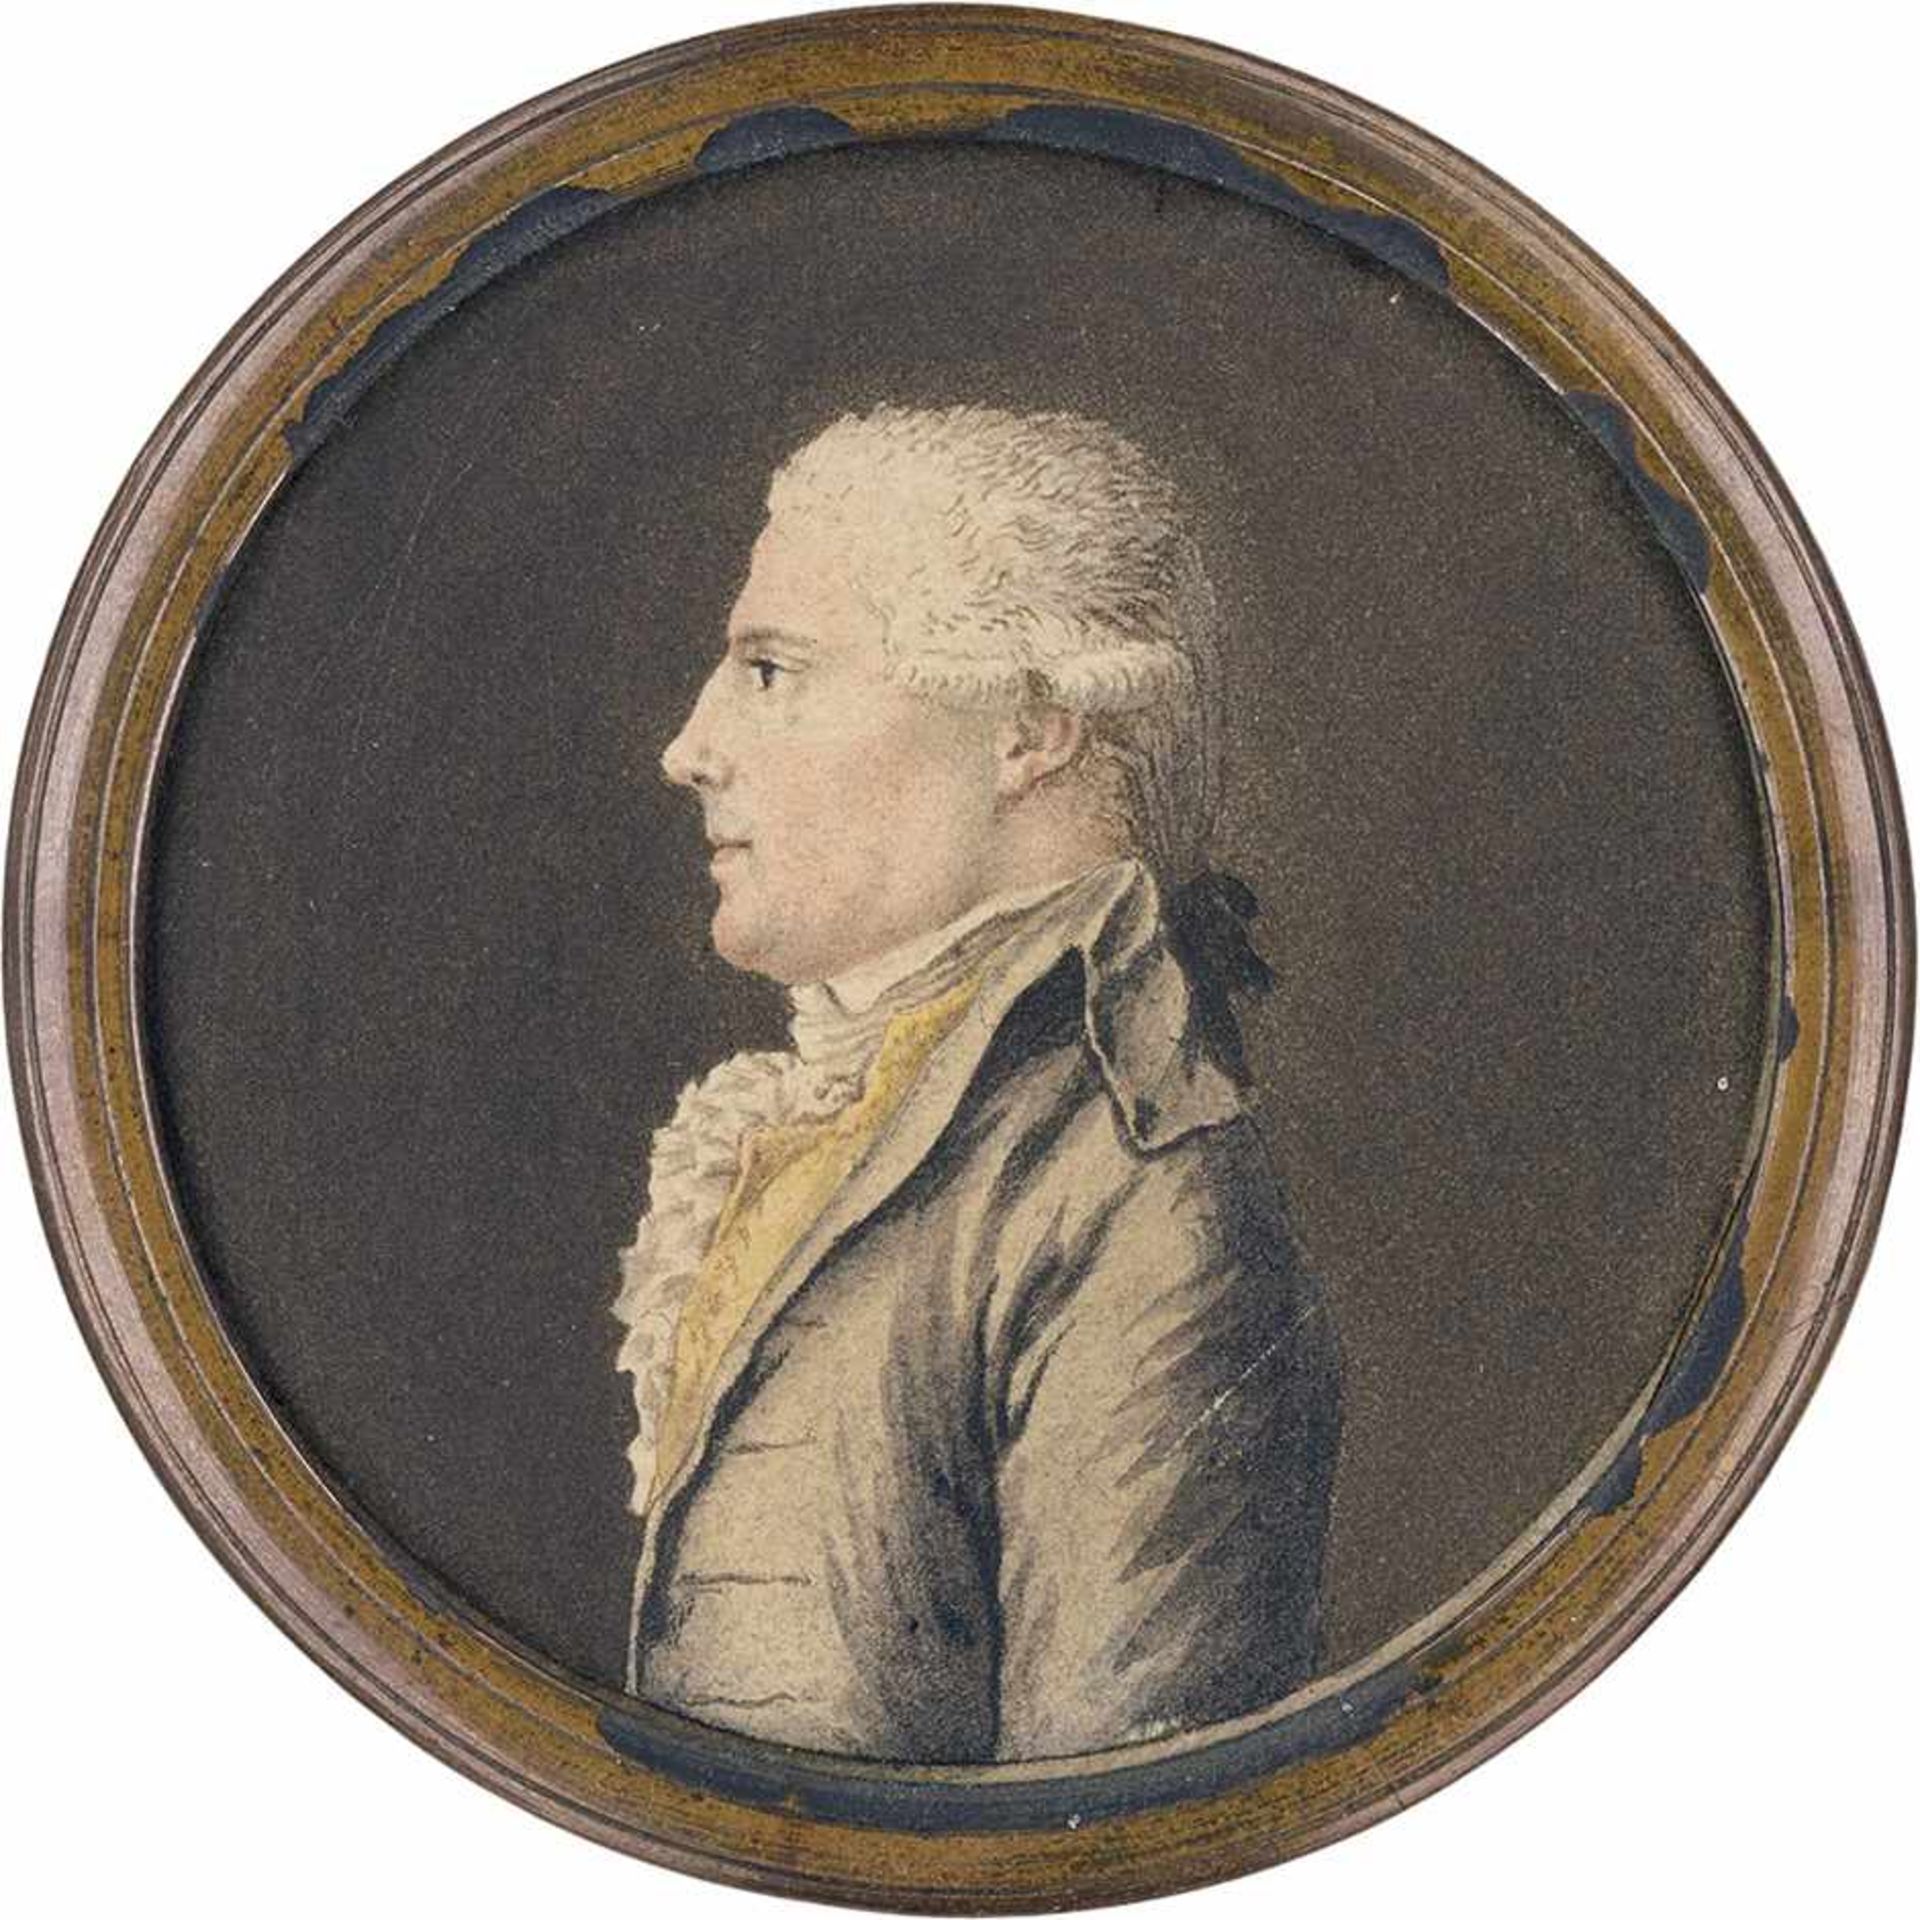 Französisch: um 1780/1790. Profilbildnis eines jungen Mannes nach links, in heller Jacke und